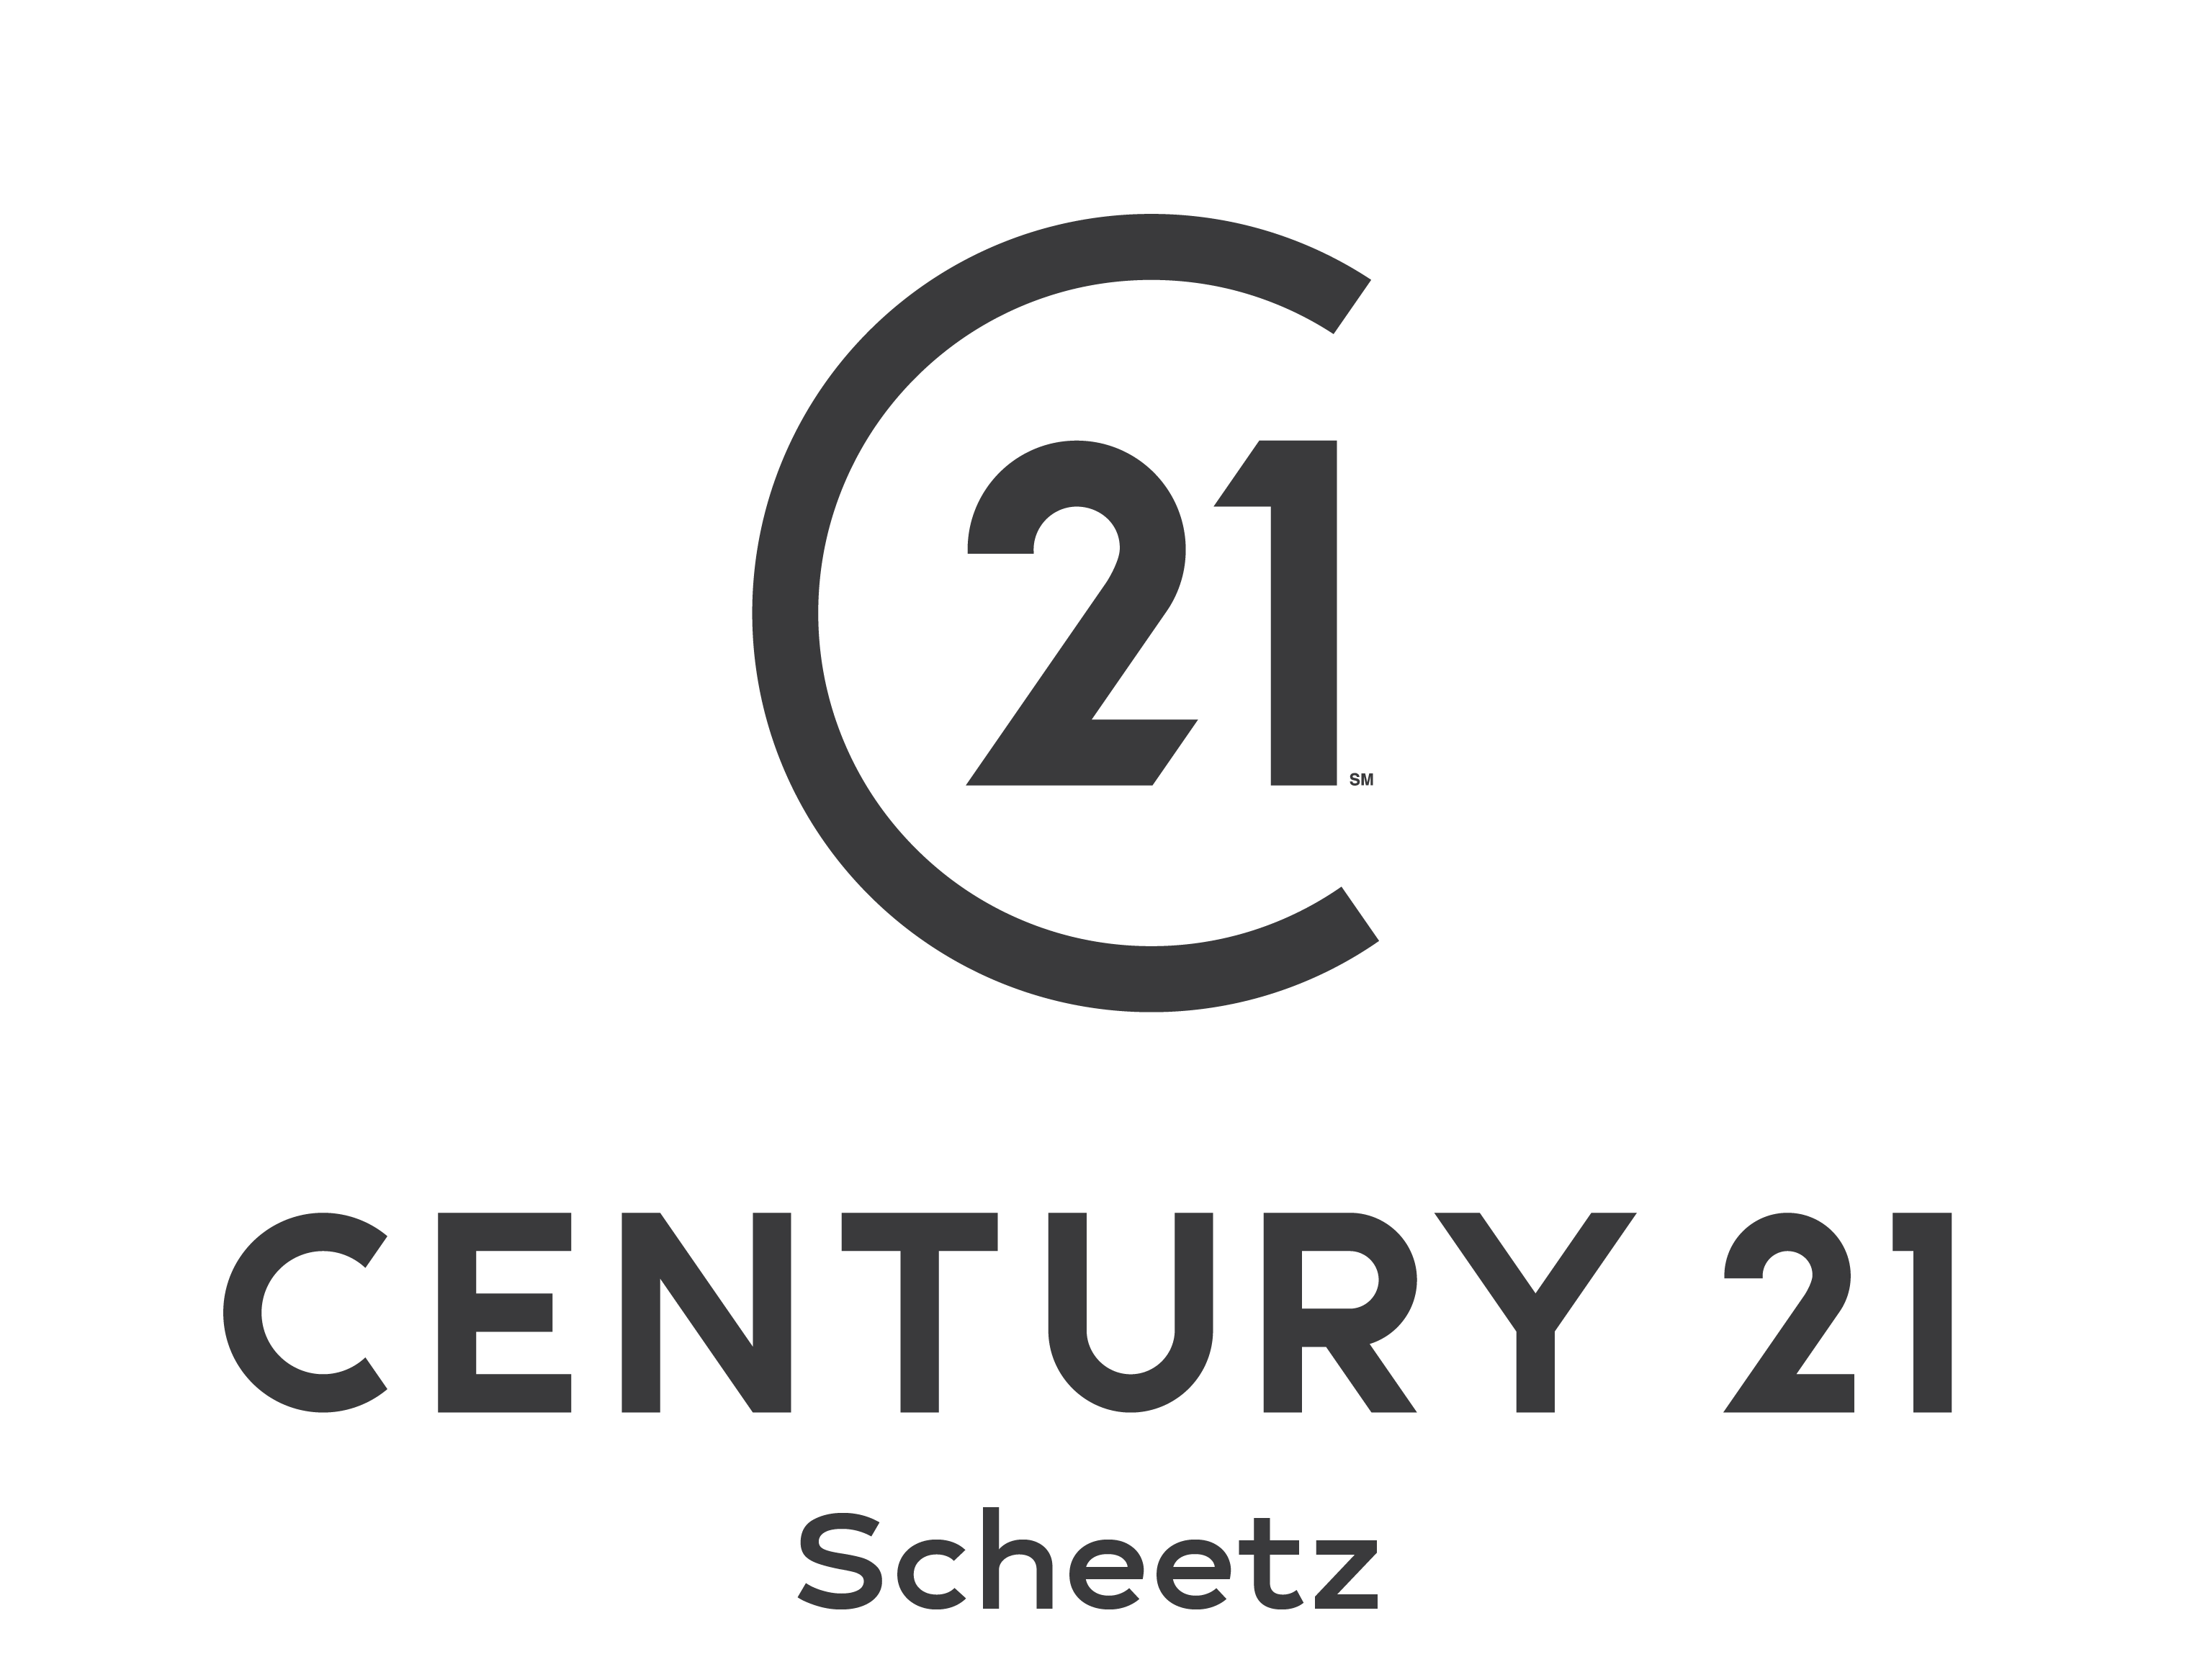 CENTURY 21 Scheetz